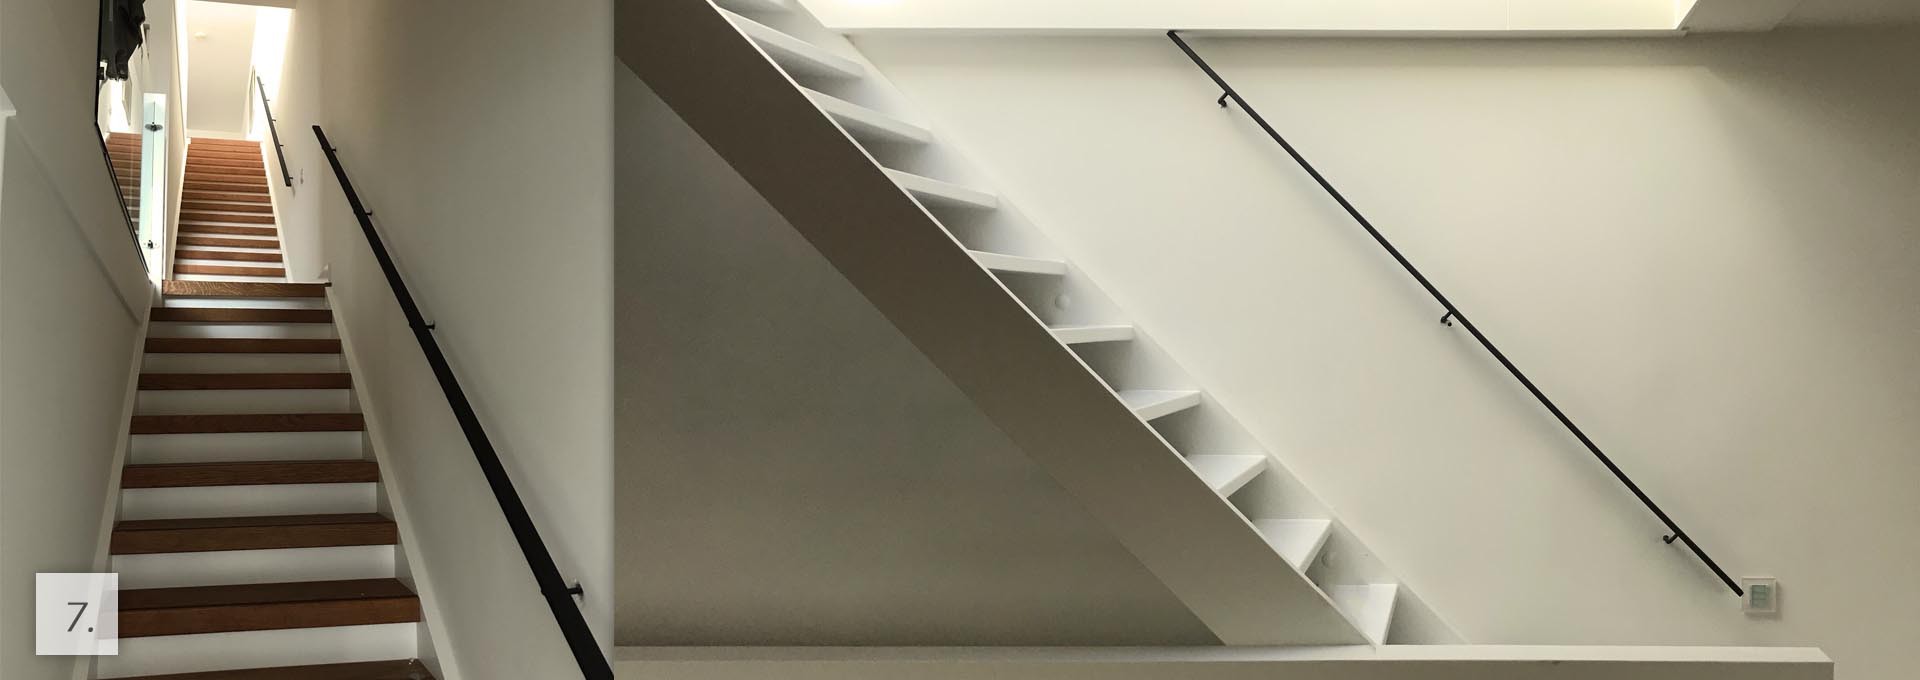 Valpartijen op de trap? Met een toffe stalen trapleuning is je trap stylisch en veilig!